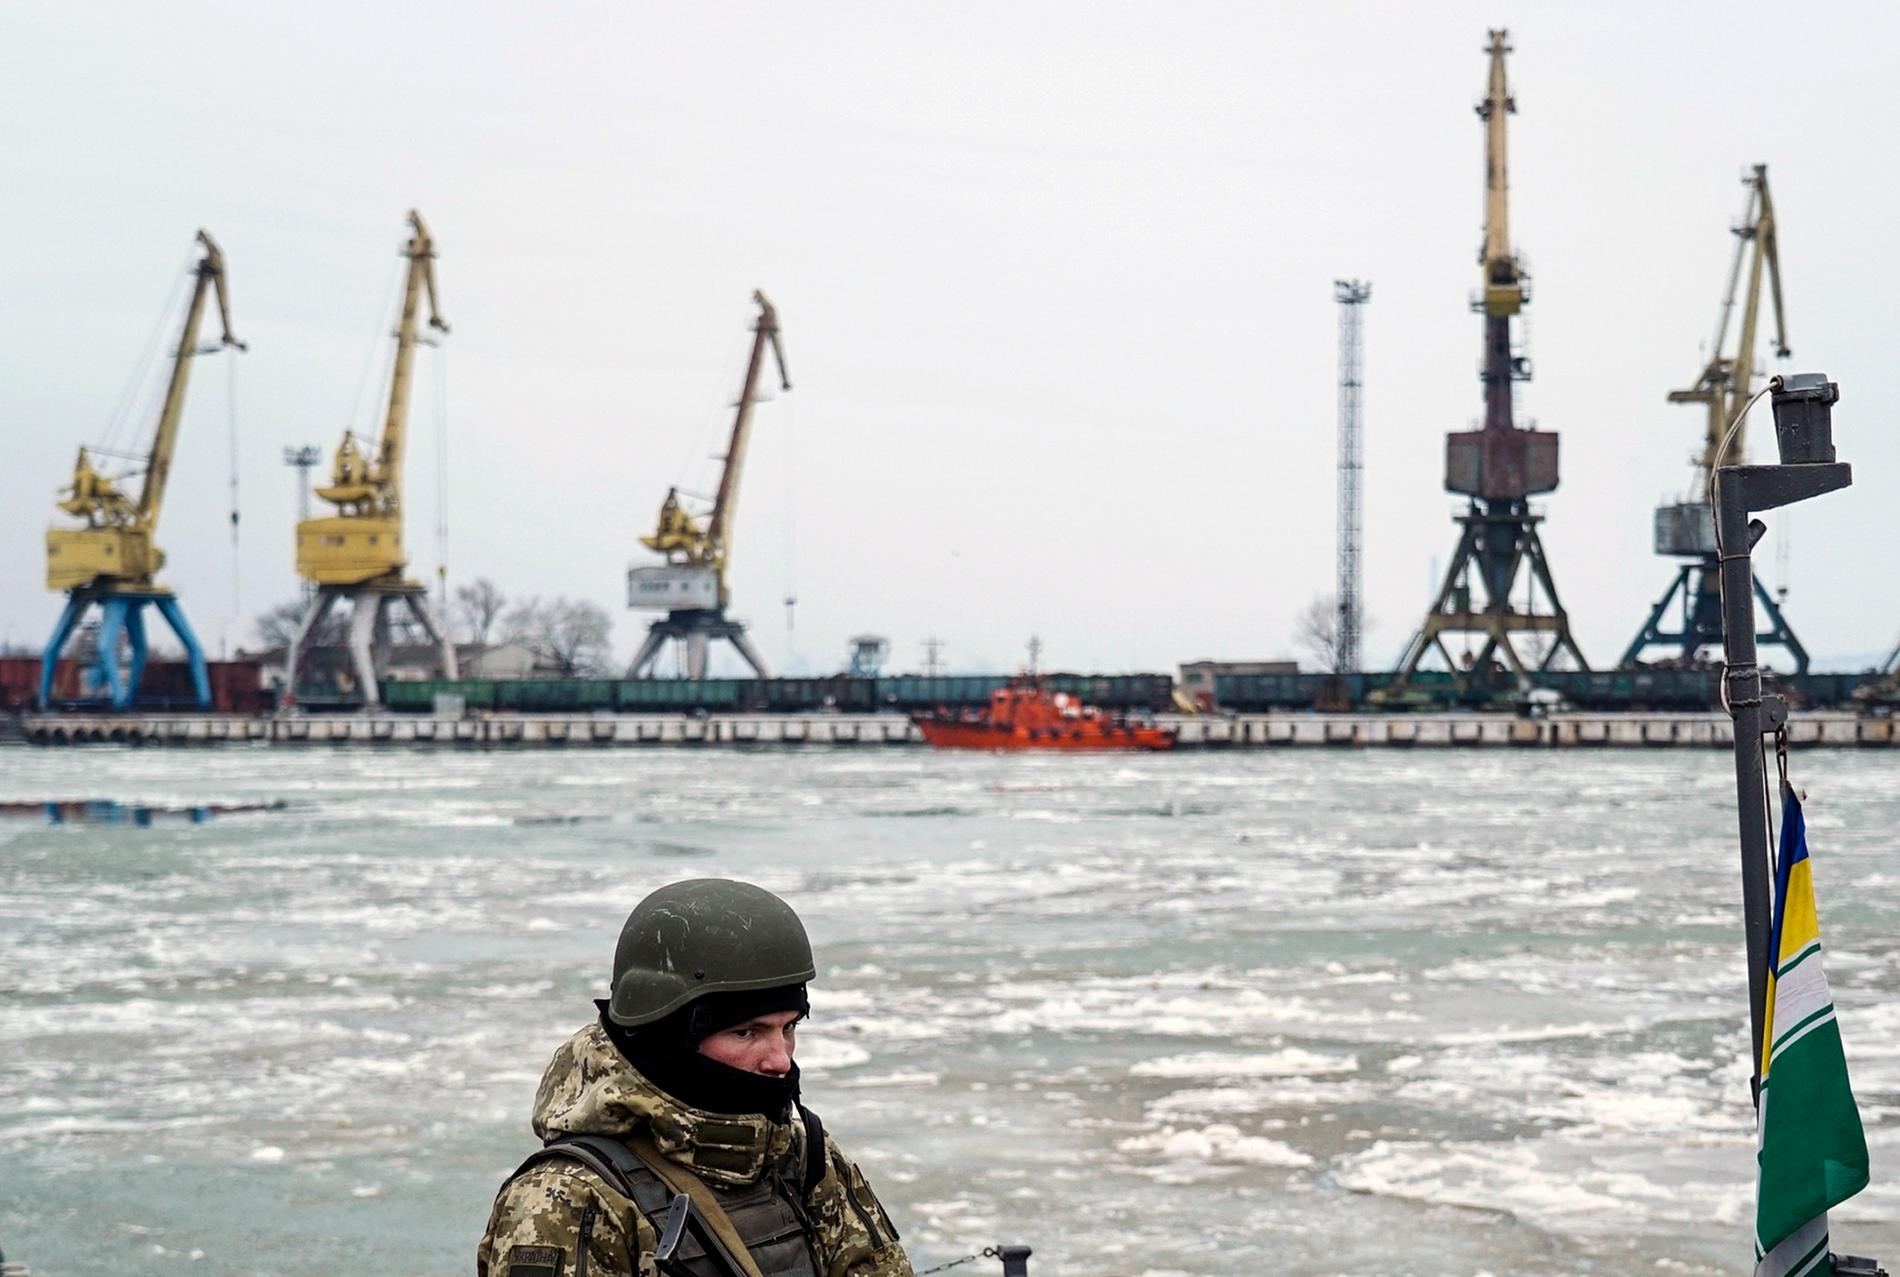 En ukrainsk besättningsman på ett kustbevakningsskepp i Azovska sjön i veckan.